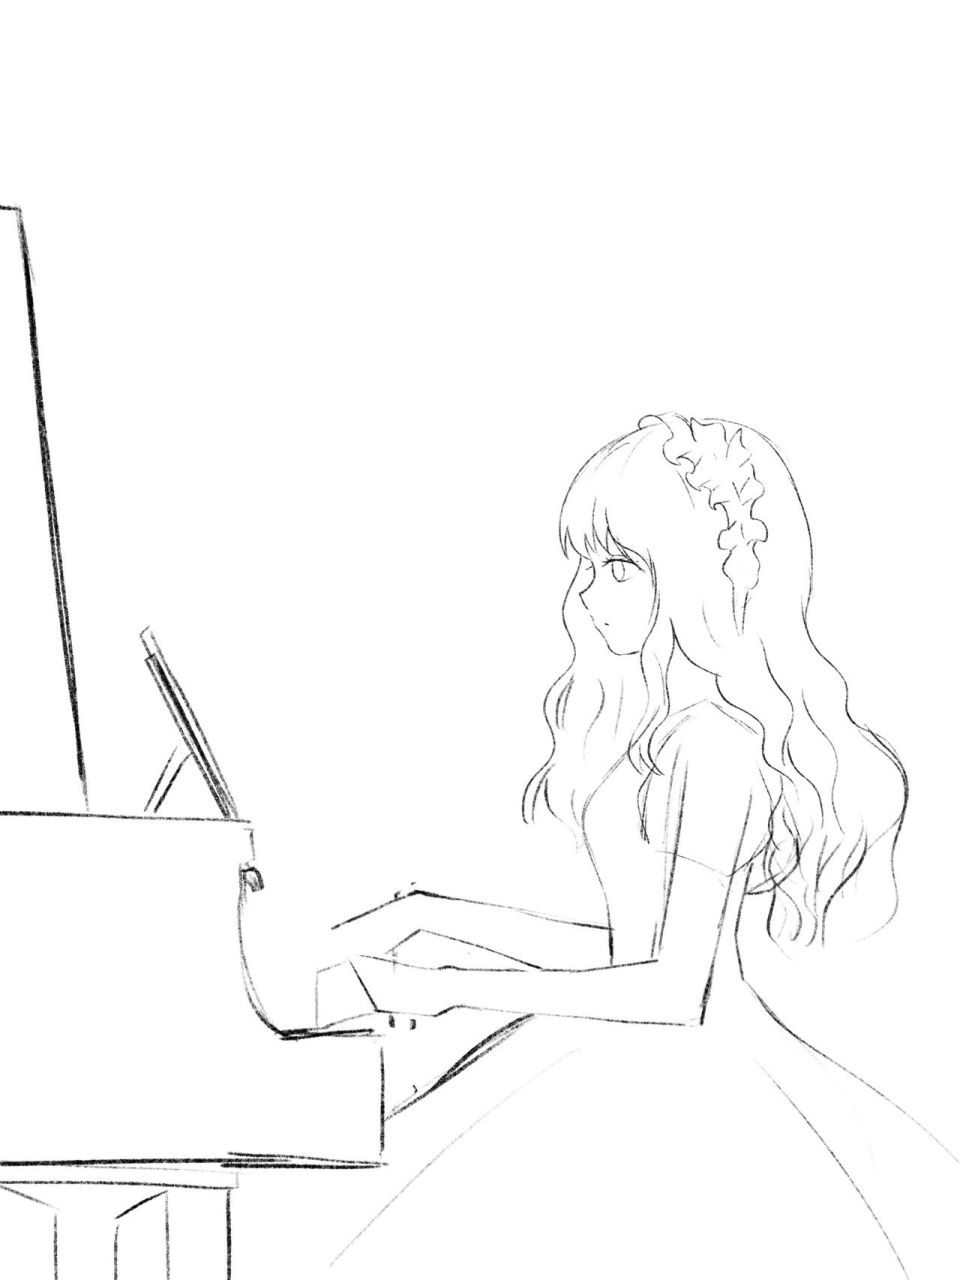 画一个女孩正在弹钢琴图片